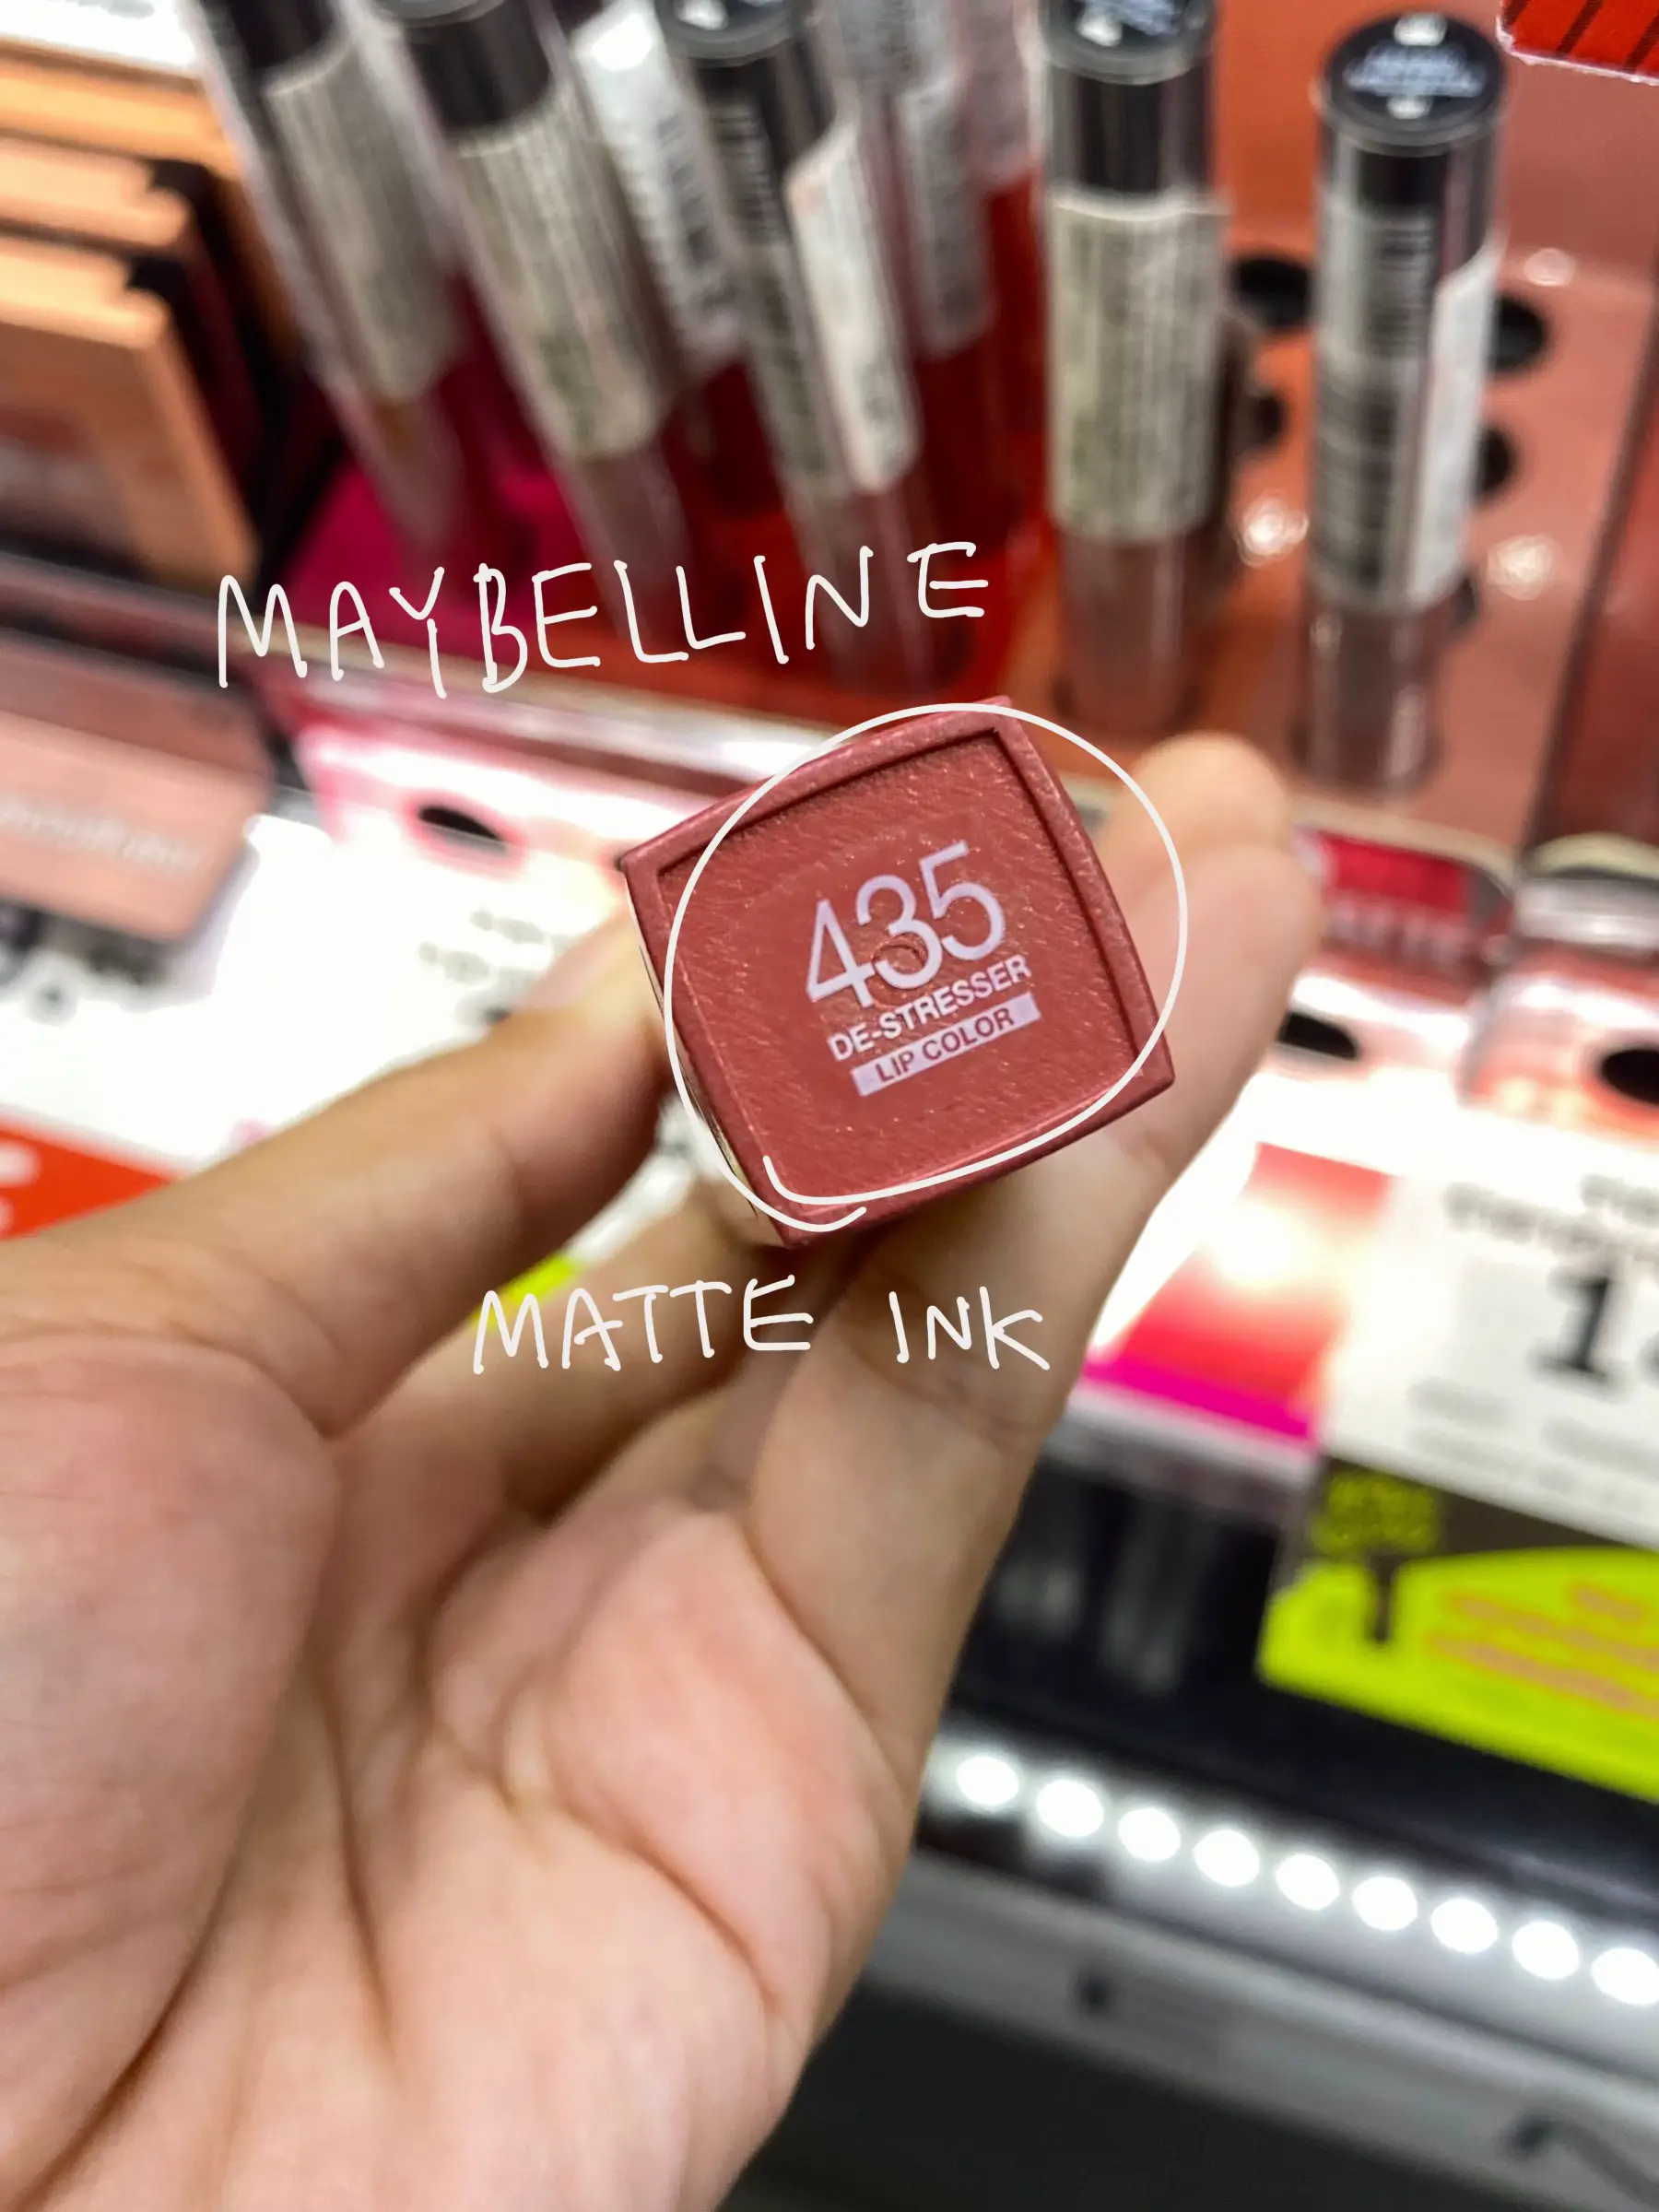 Maybelline - Liquid Lipstick SuperStay Matte Ink - 435: De-Stresser